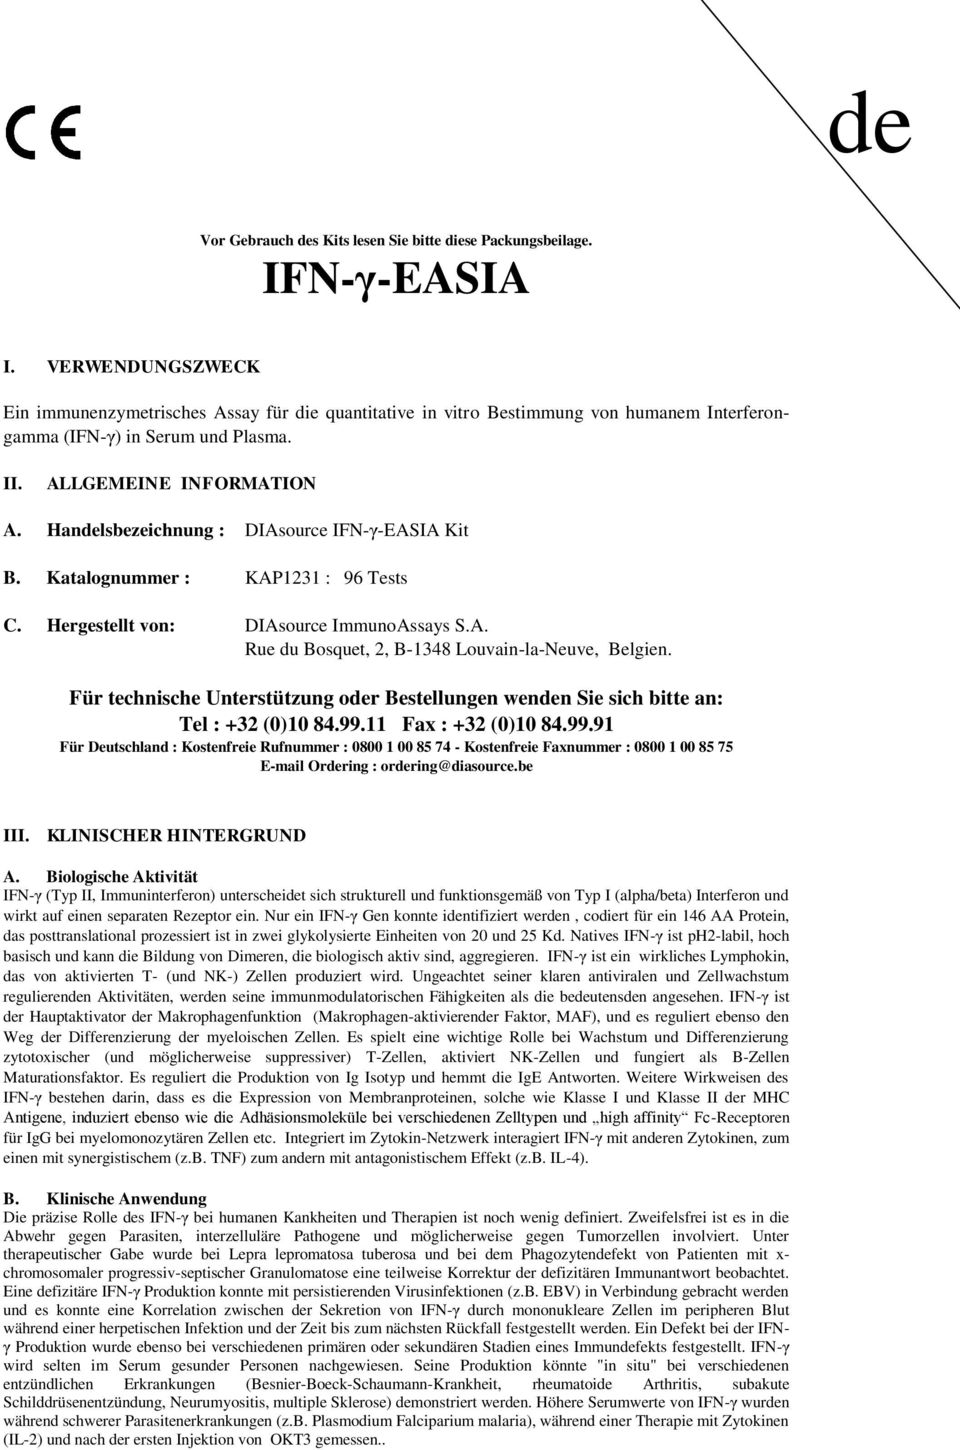 Handelsbezeichnung : DIAsource IFNγEASIA Kit B. Katalognummer : KAP1231 : 96 Tests C. Hergestellt von: DIAsource ImmunoAssays S.A. Rue du Bosquet, 2, B1348 LouvainlaNeuve, Belgien.